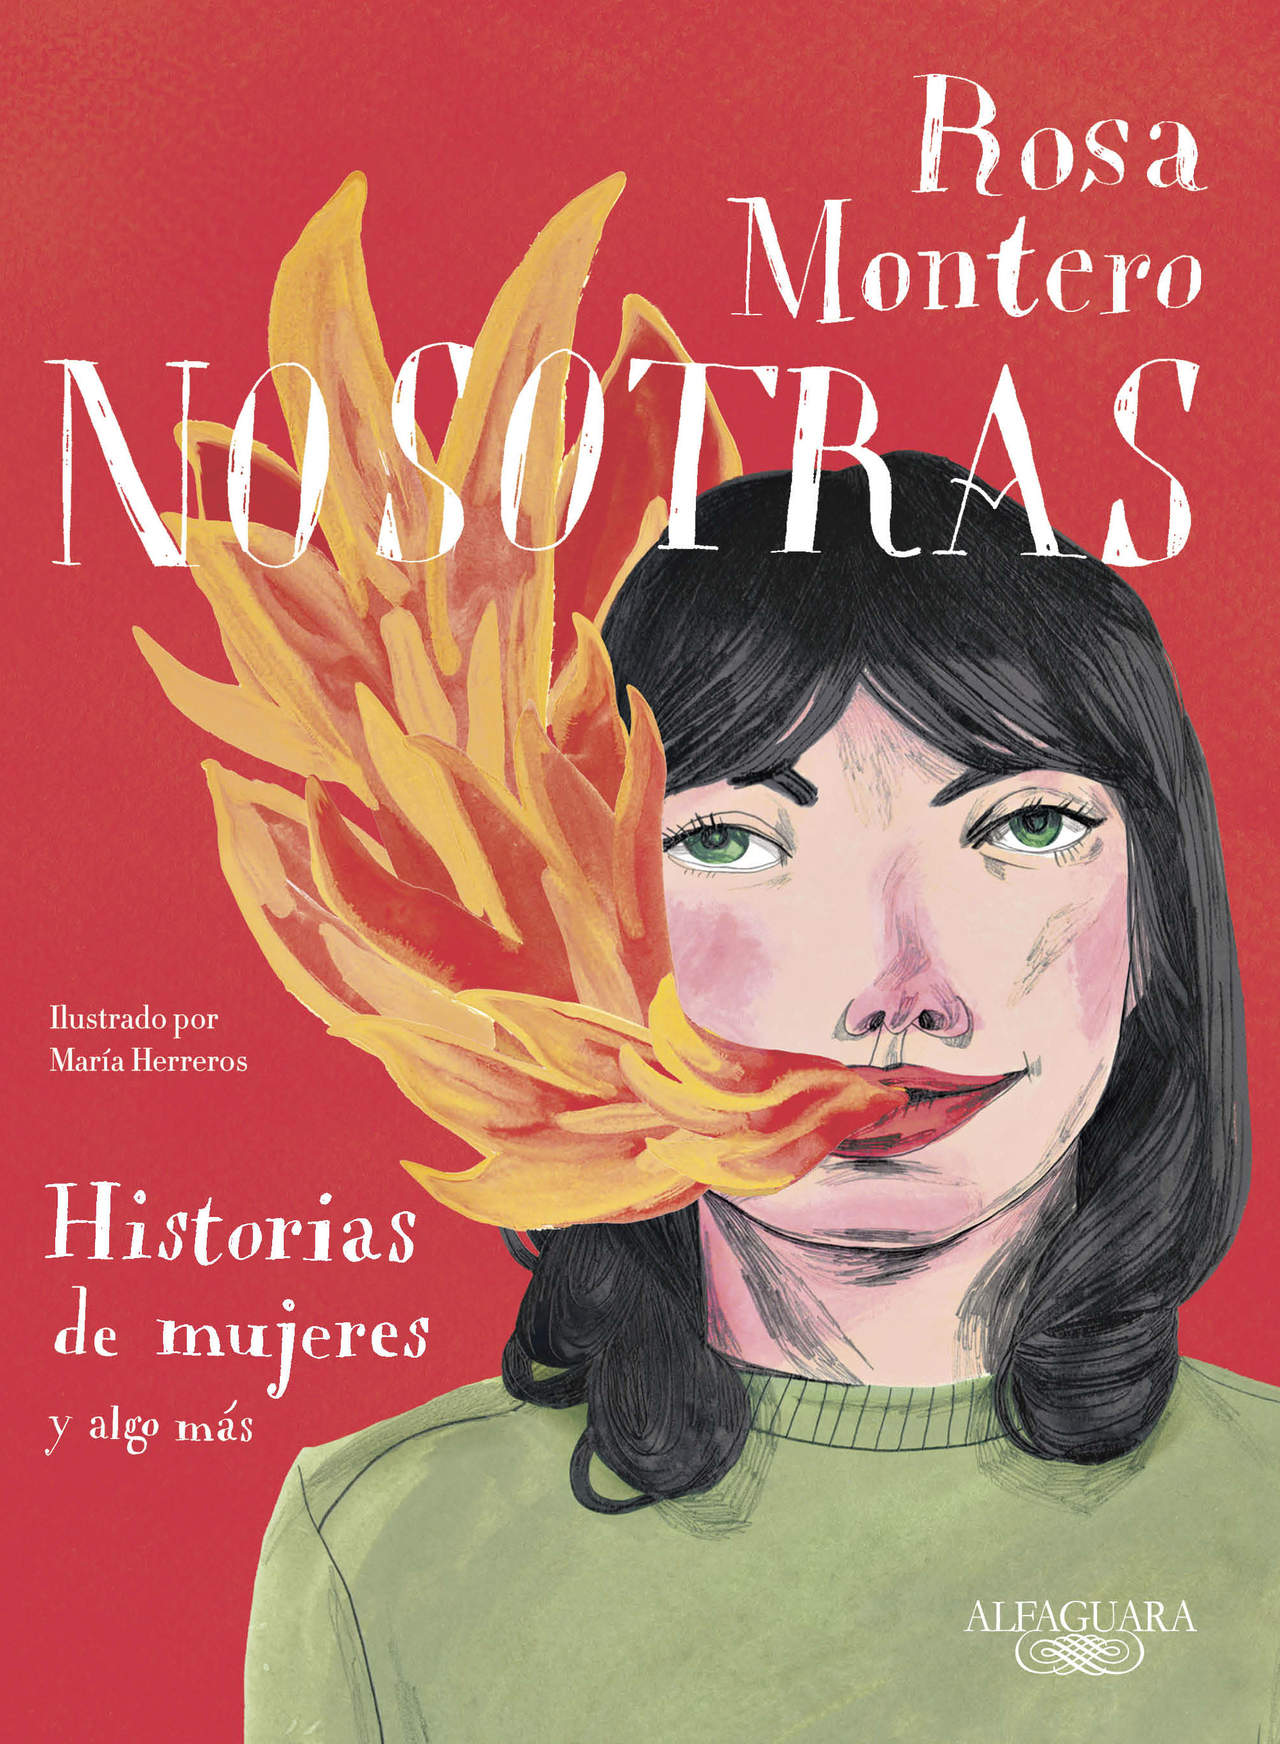 Nosotras de Rosa Montero.